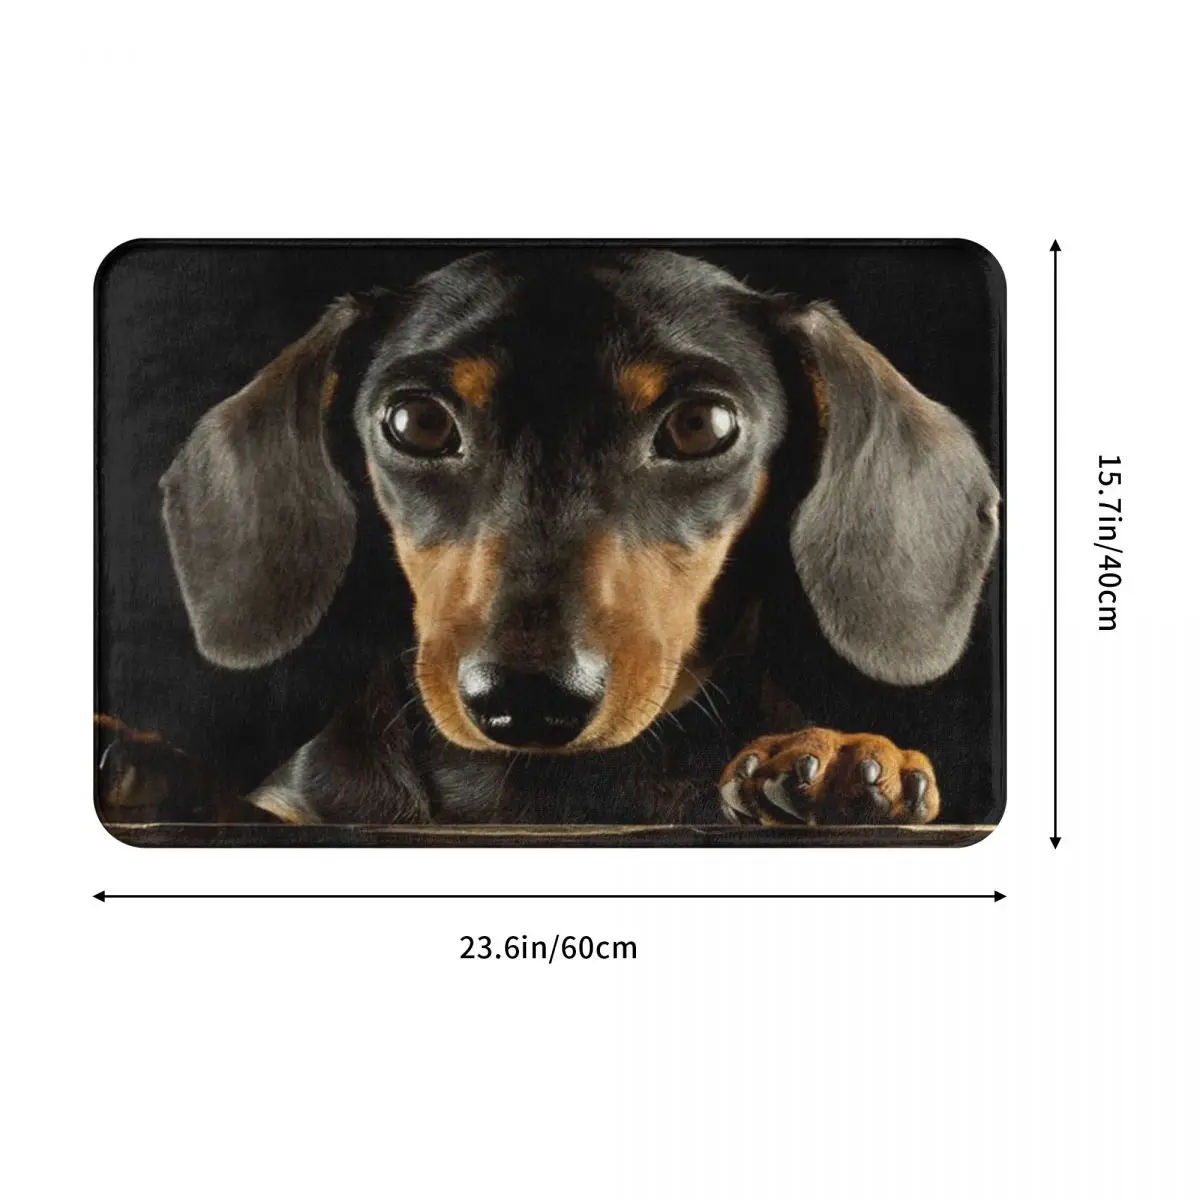 Dachshund Dog Portrait Doormat Floor Decor